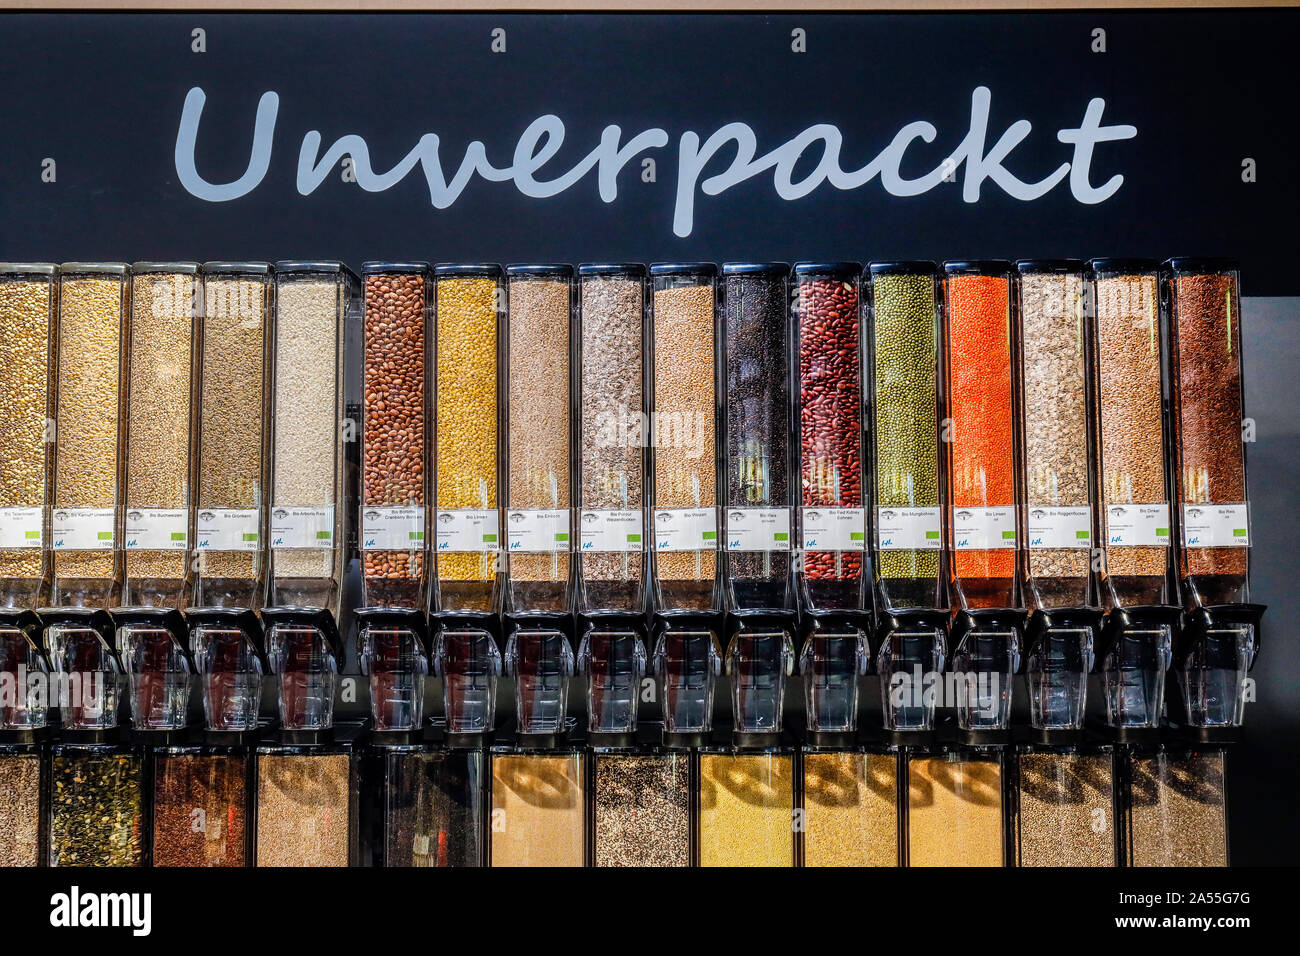 Colonia, nella Renania settentrionale-Vestfalia, Germania - scompattato il cibo al Unverpackt stand al mercato organico all'ANUGA FOOD fair. Koeln, Nordrhein-Westf Foto Stock